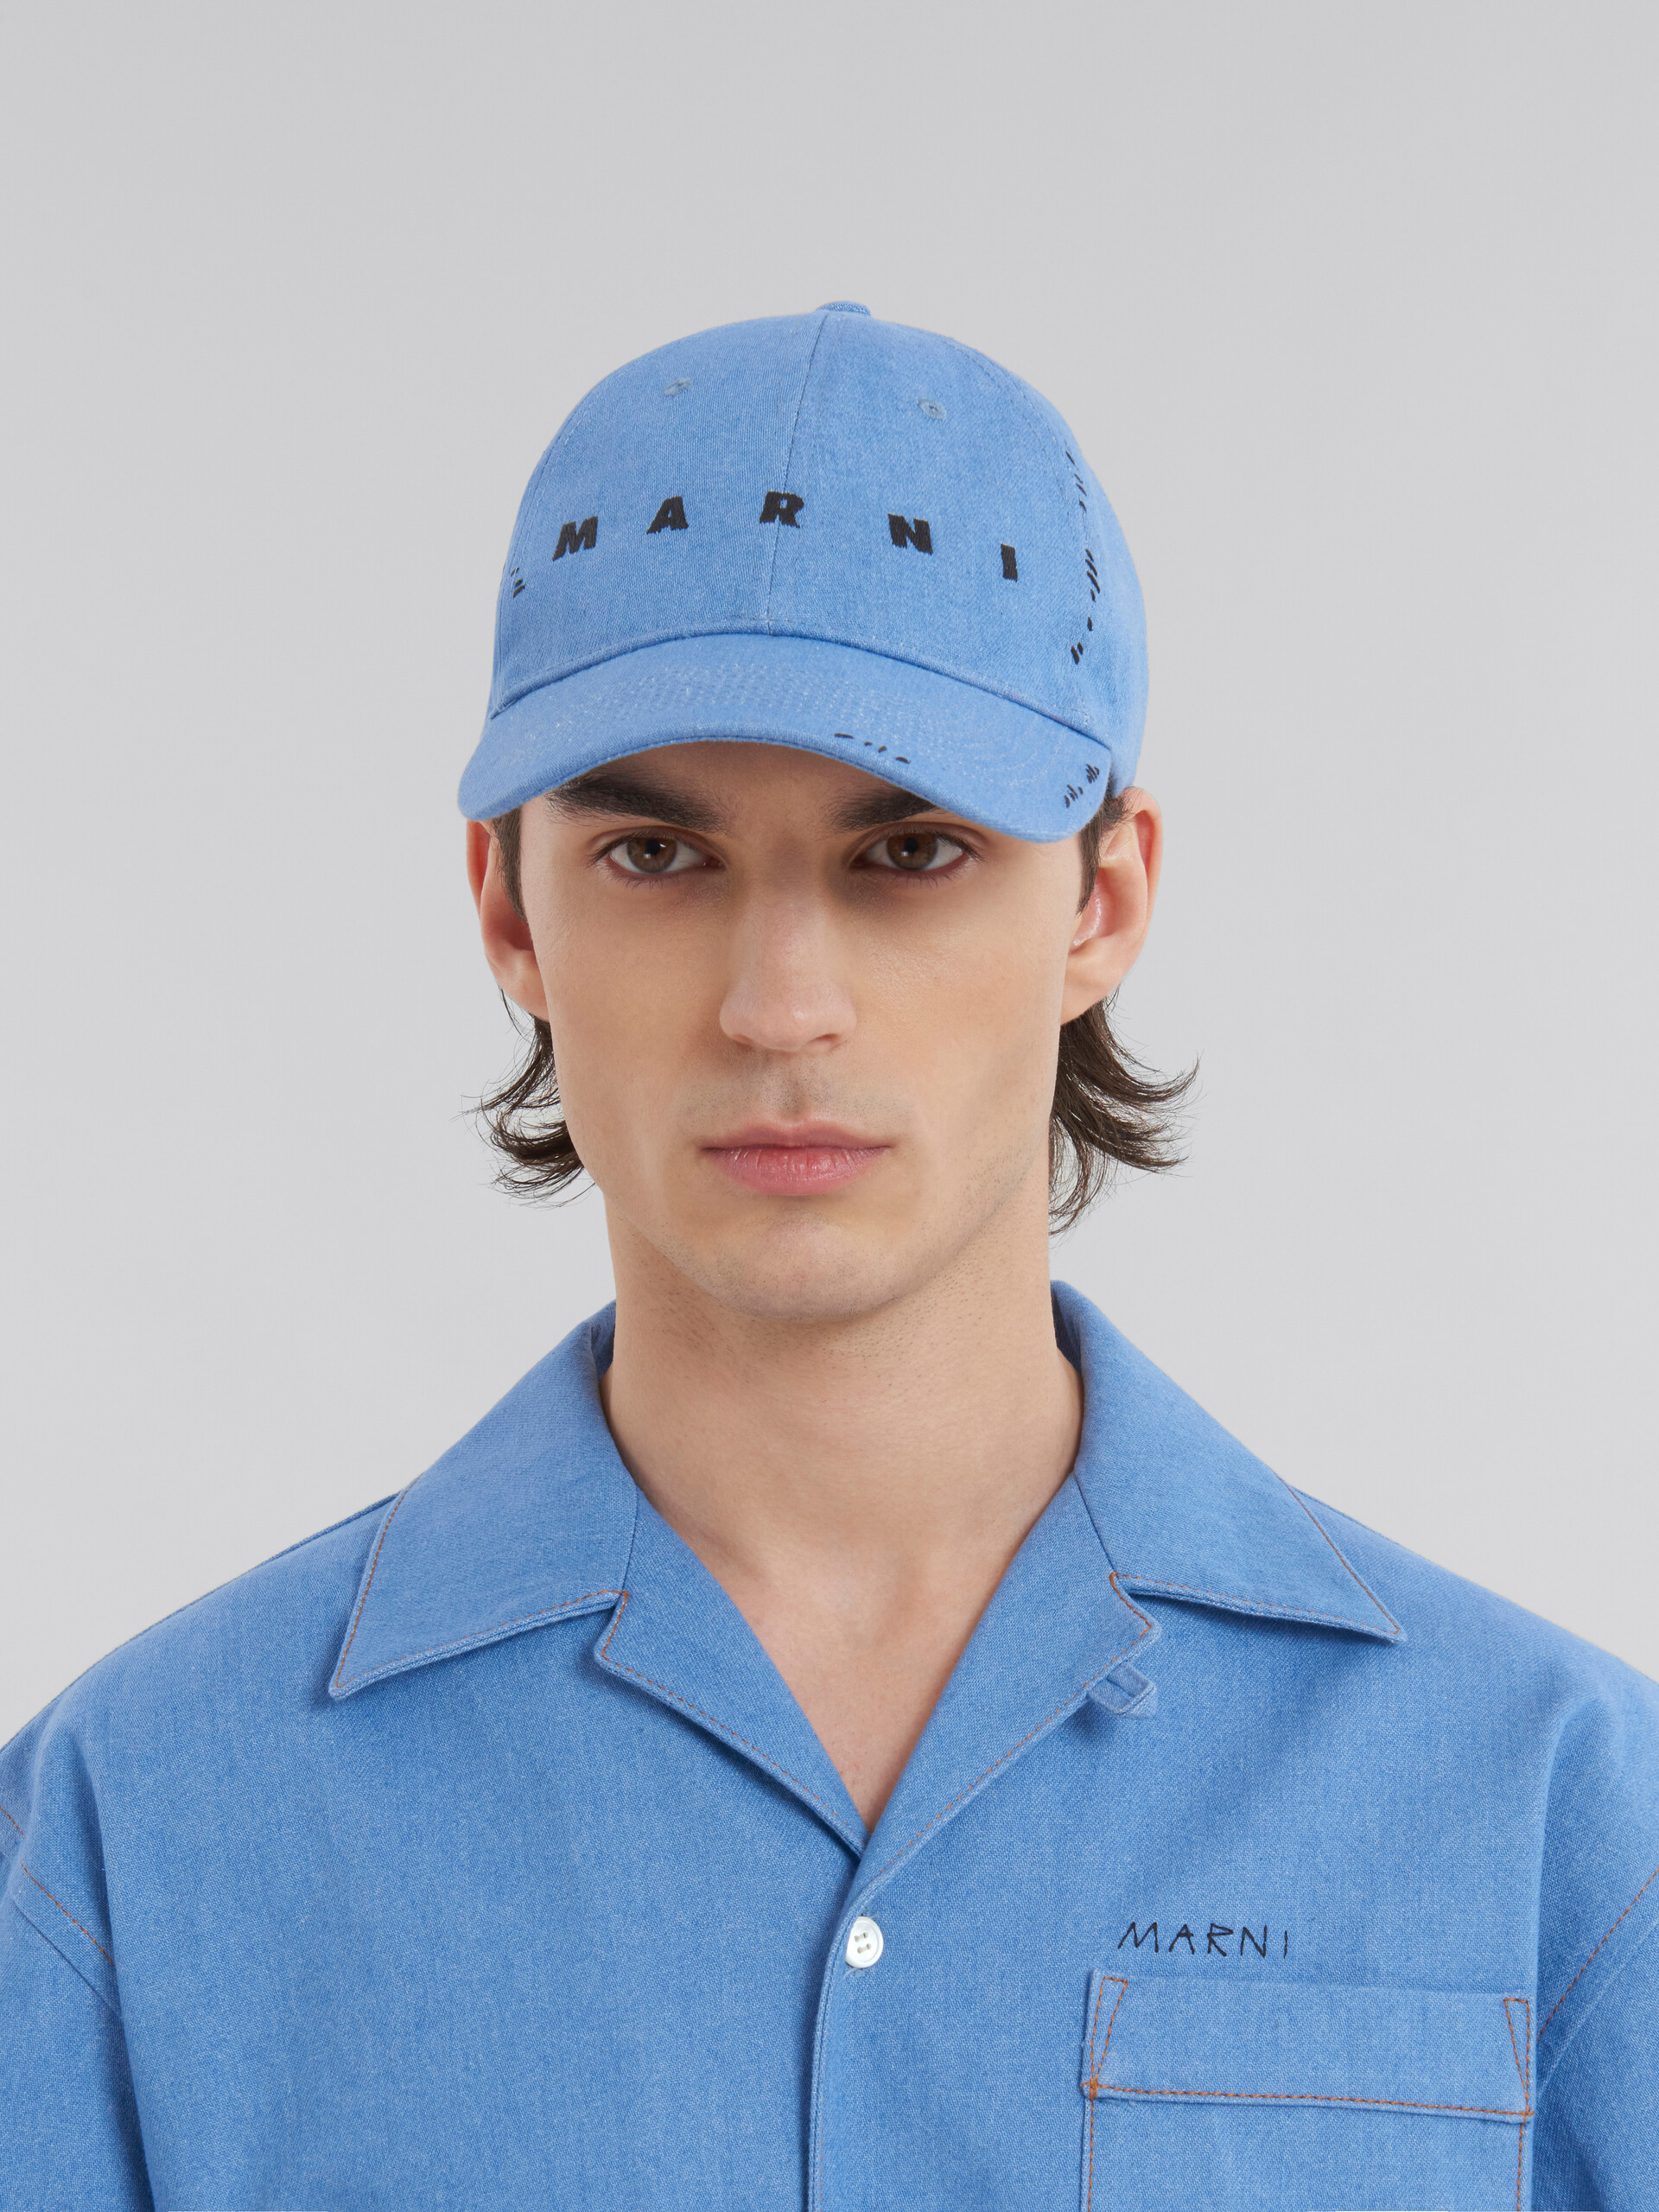 Blaue Kappe aus Denim mit Marni-Flicken - Hüte - Image 2